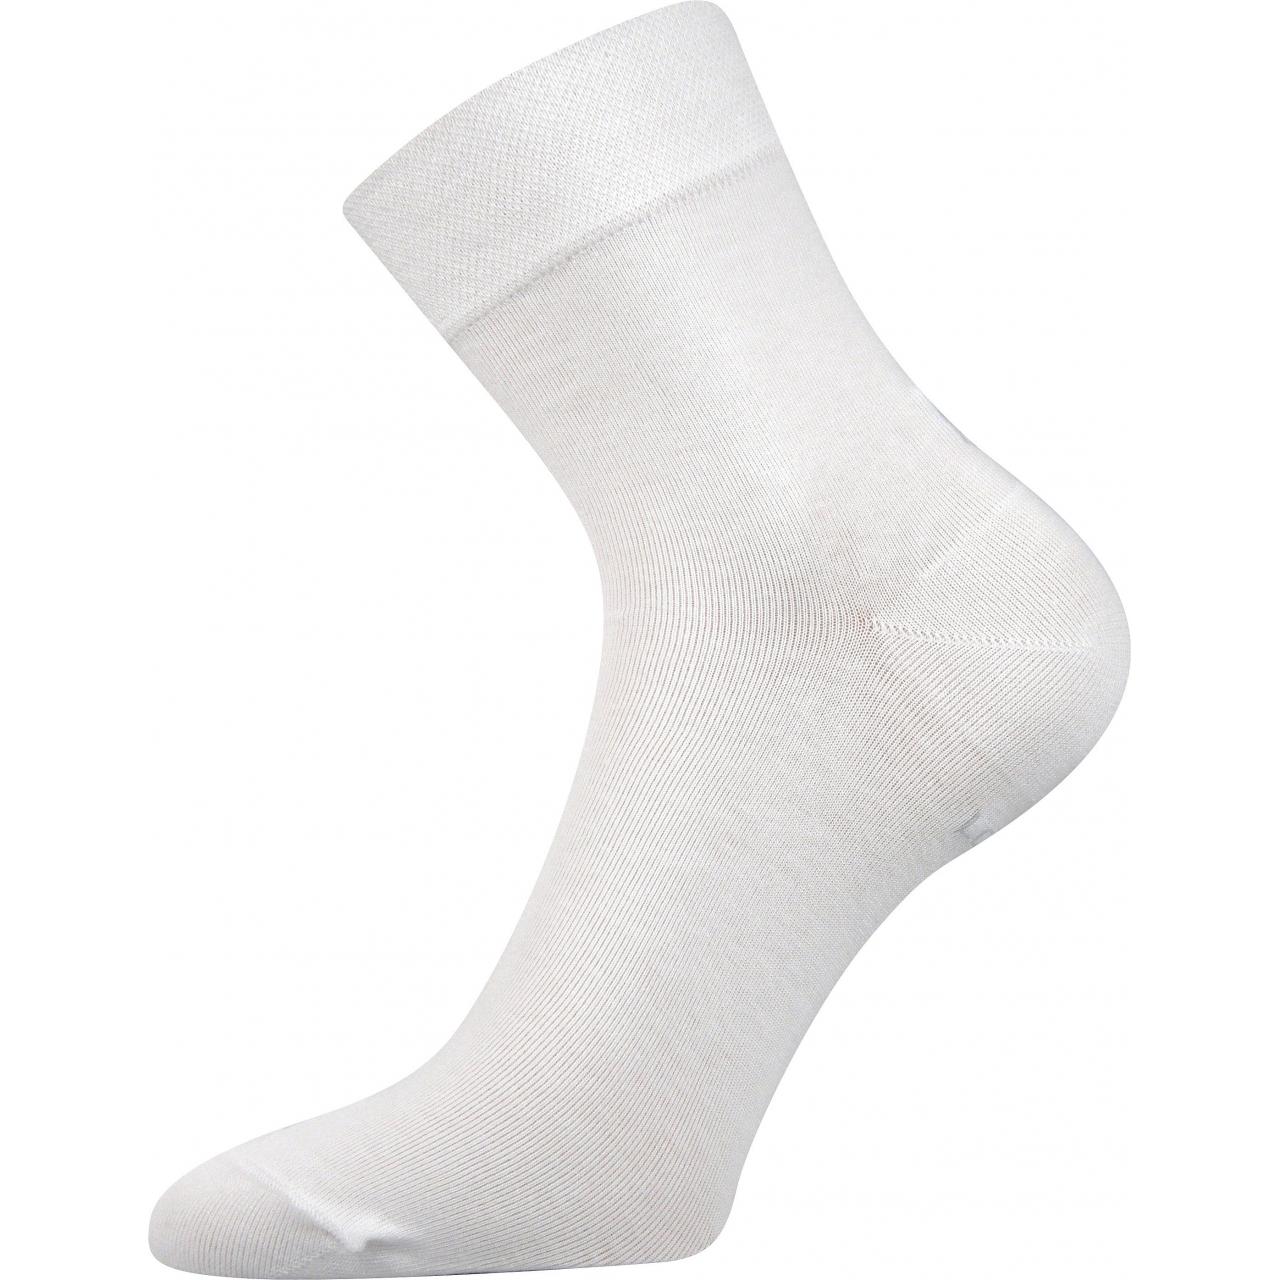 Ponožky dámské Lonka Fanera - bílé, 35-38